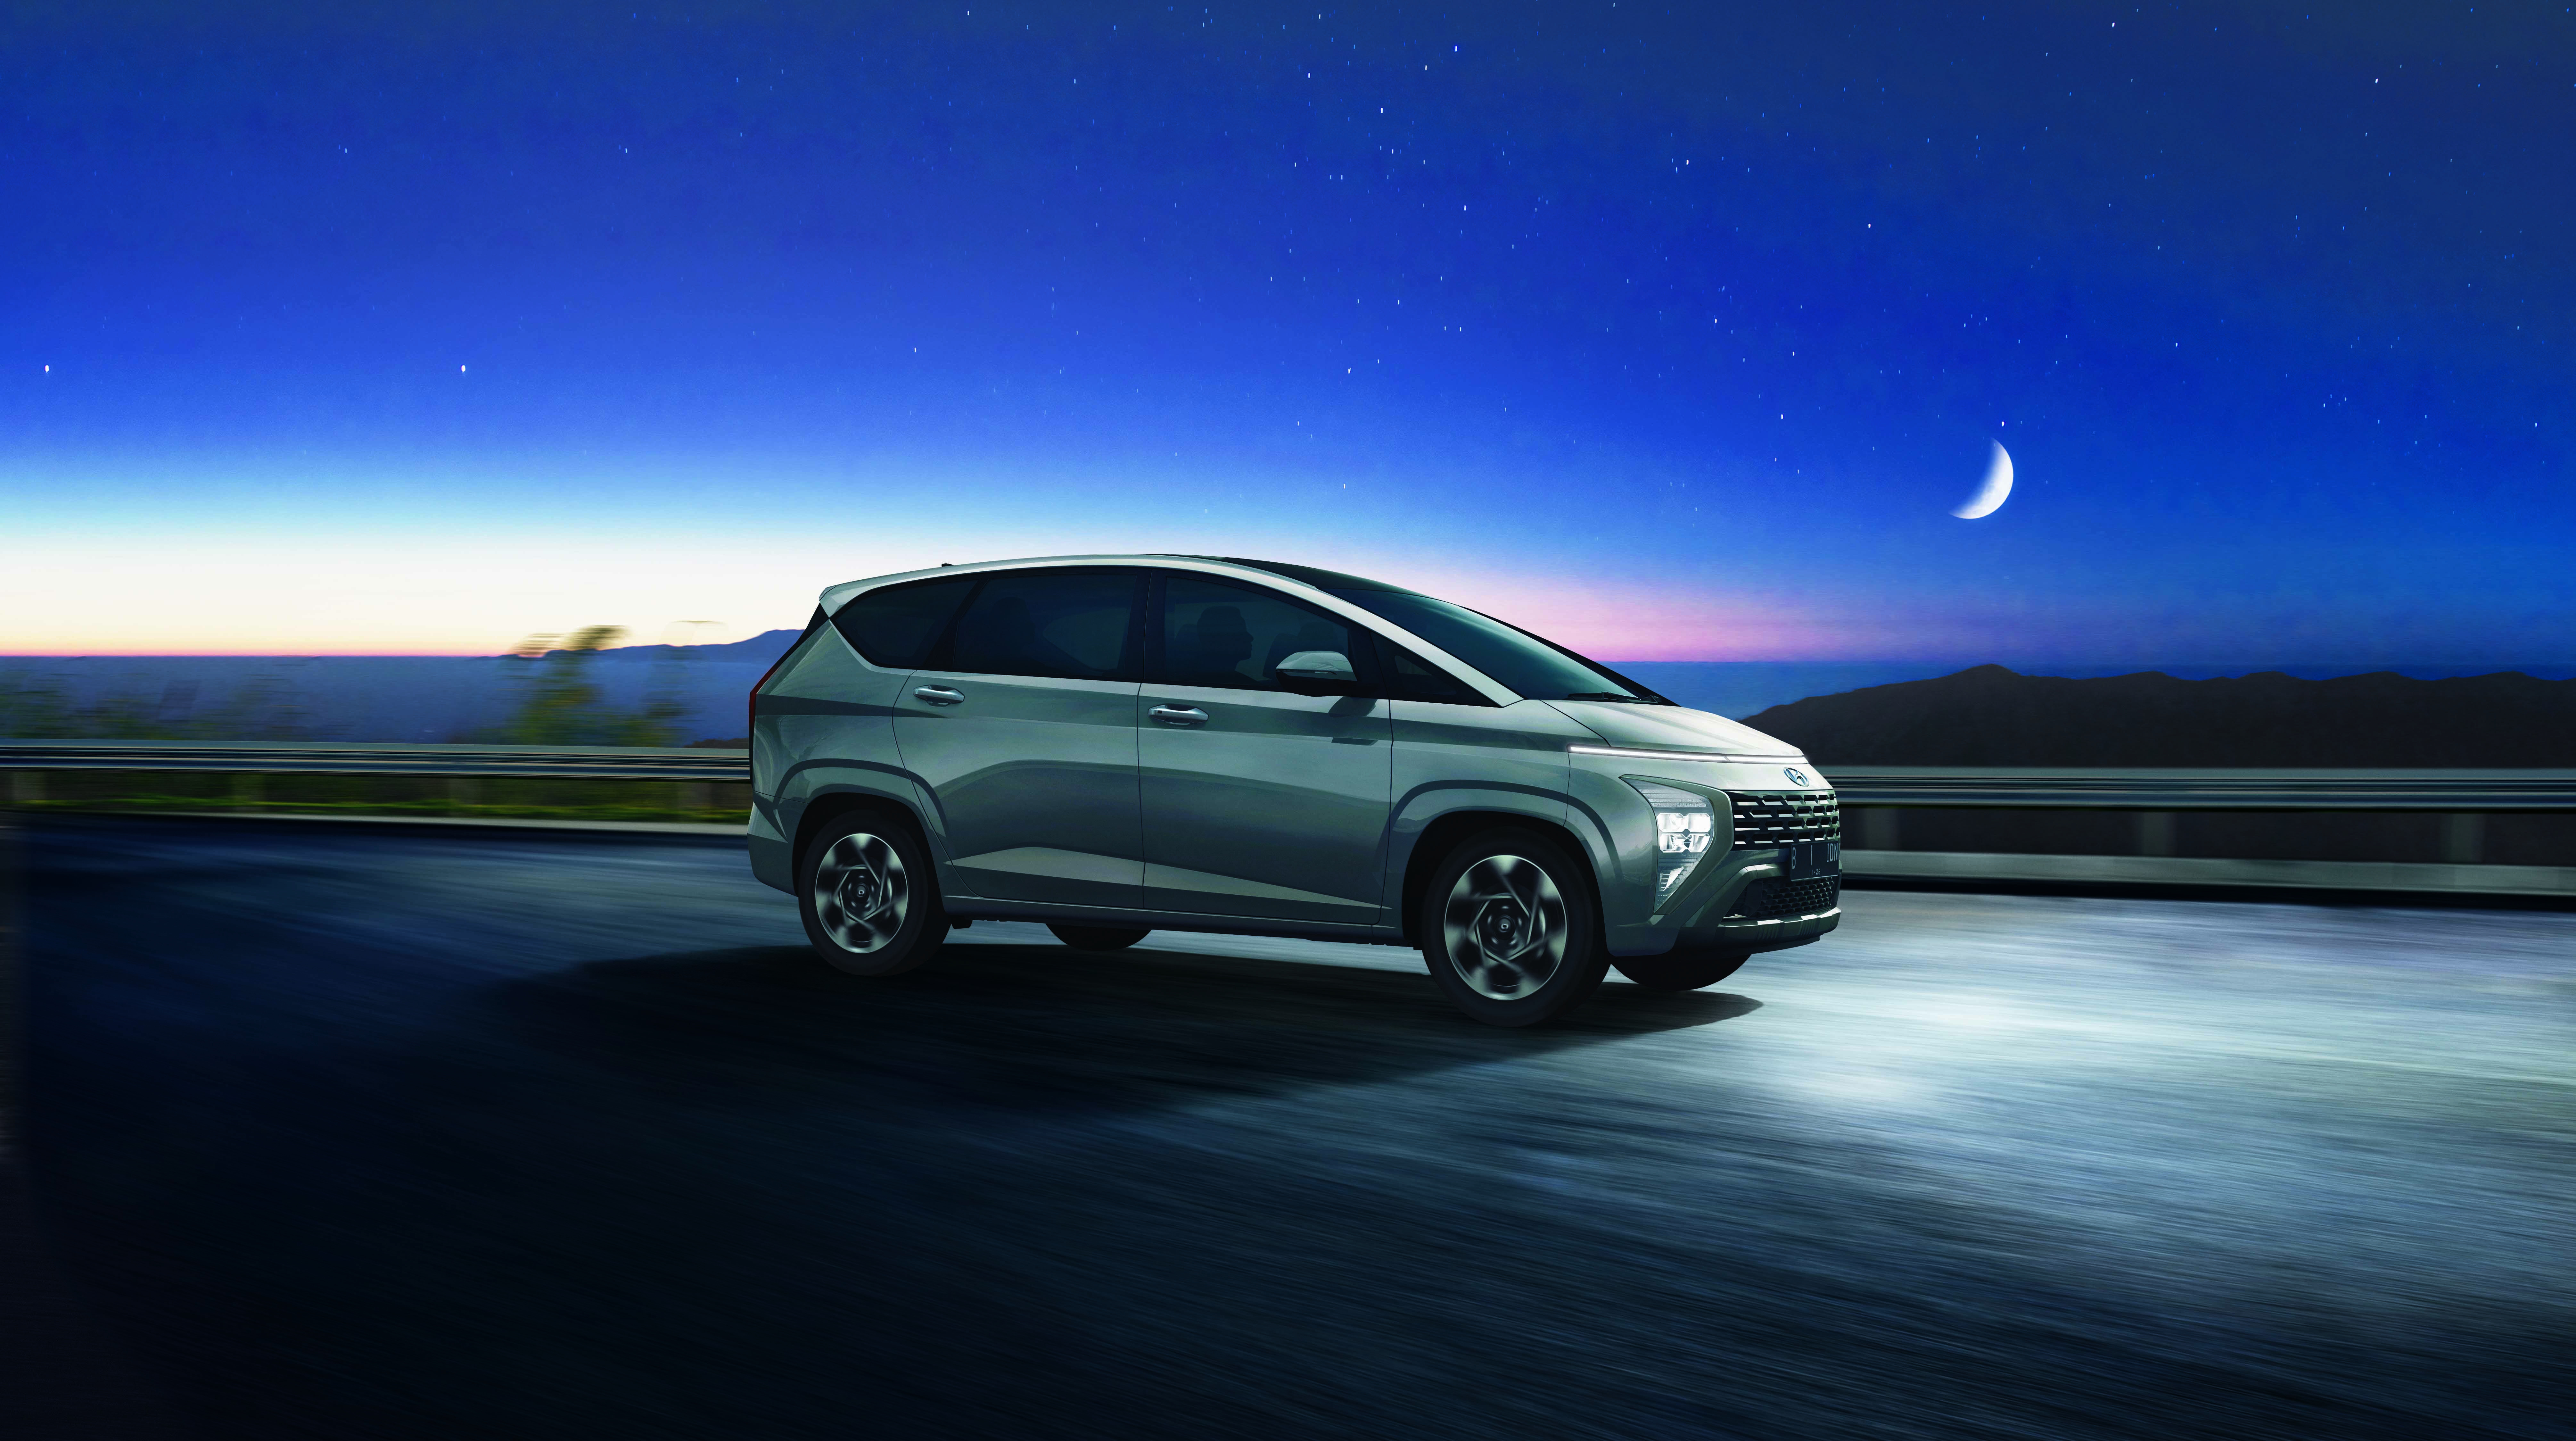 Wujudkan Impian Masyarakat Untuk Mudik, Hyundai Umumkan Pemenang Kompetisi #Diantarsangbintang